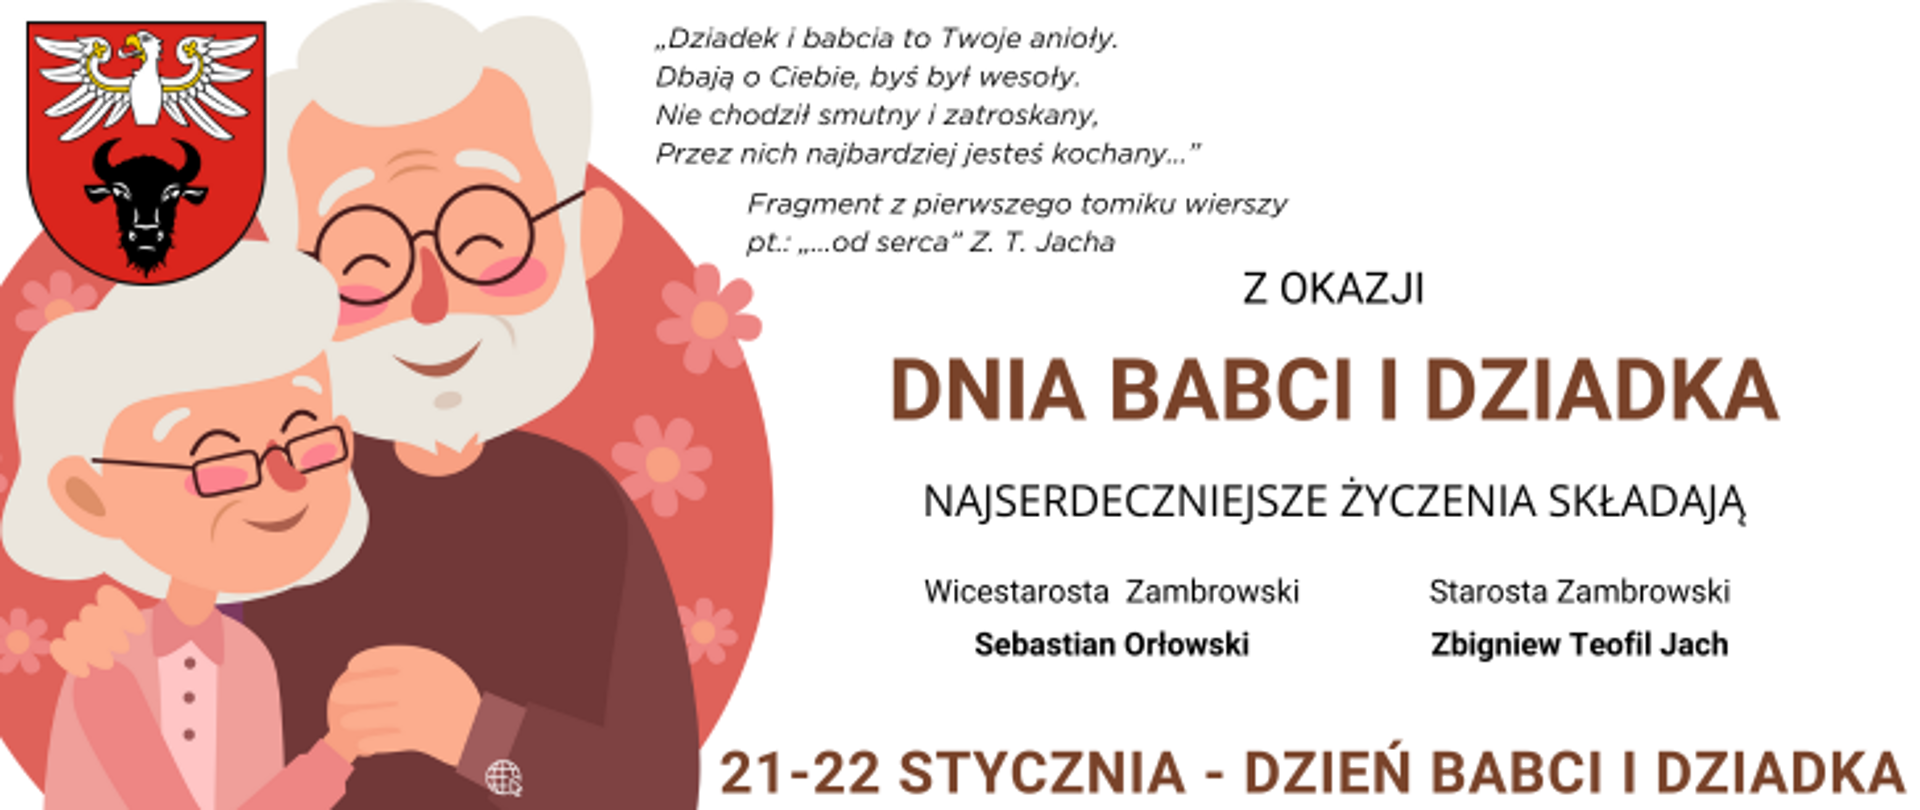 kolorowy banner z grafiką dziadków oraz z tekstem życzeń od starostów zambrowskich z okazji Dnia Babci i Dziadka